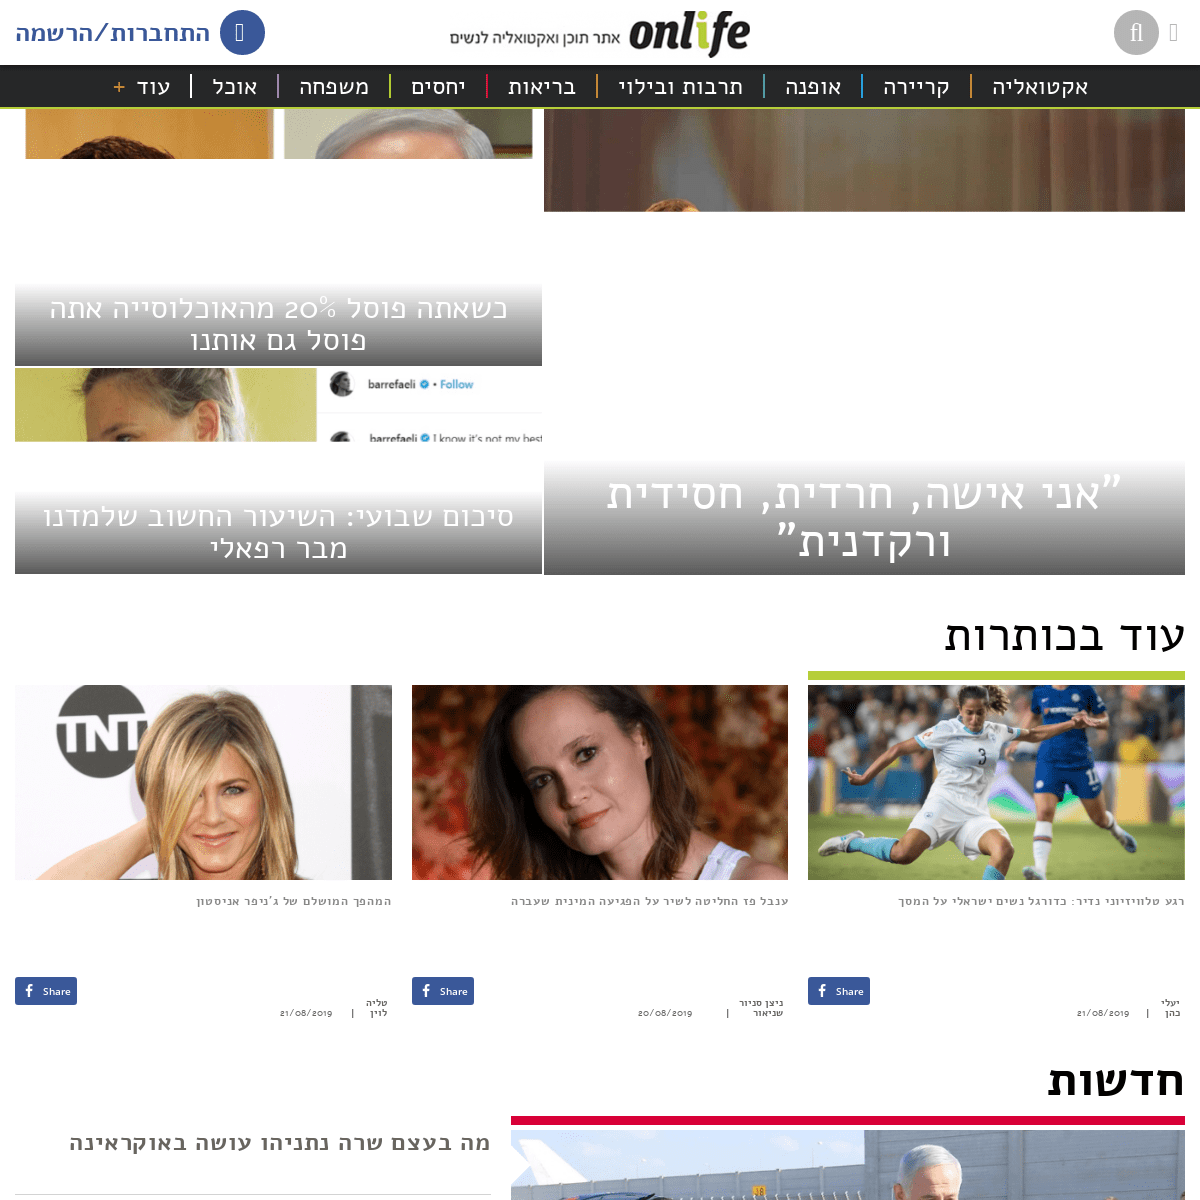 און לייף - אתר תוכן ואקטואליה לנשים המוביל בישראל | Onlife